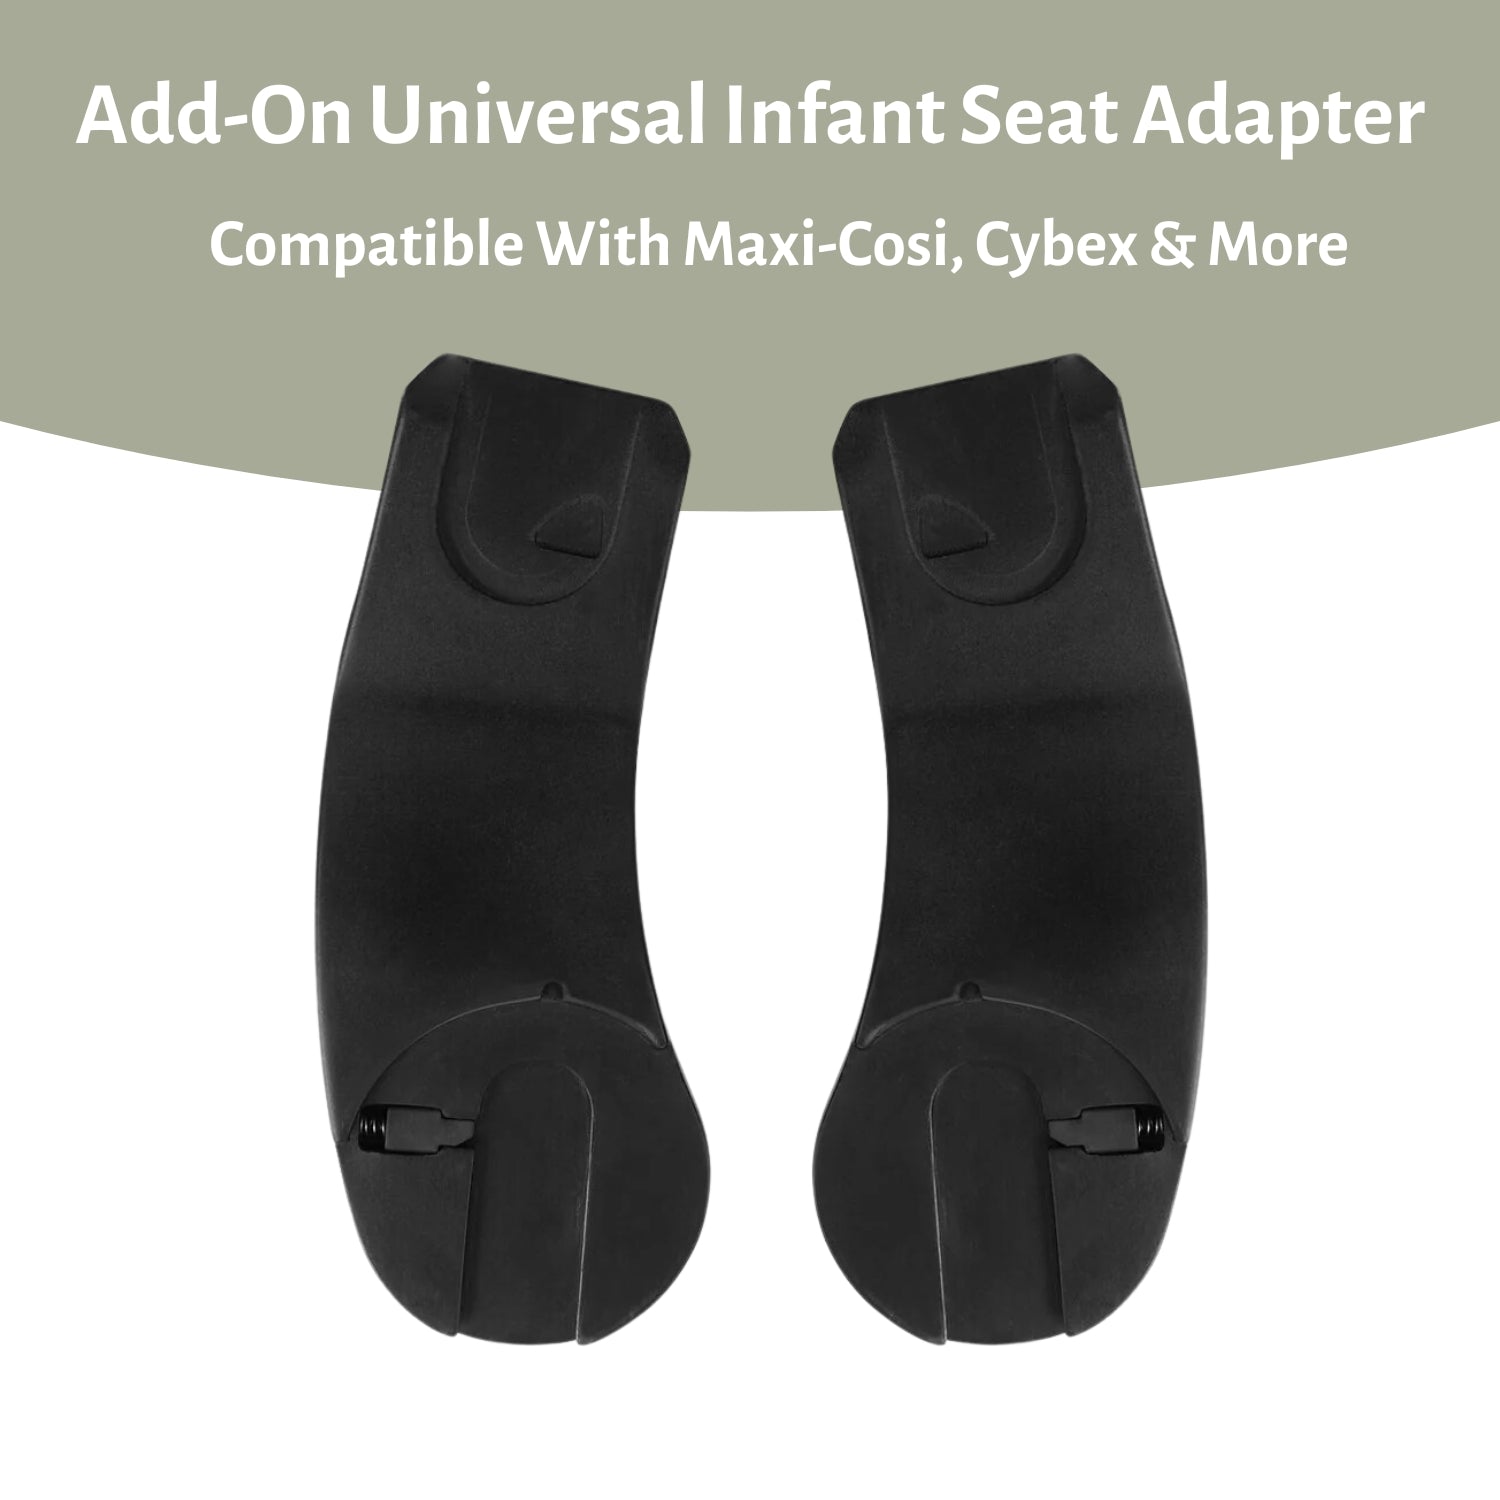 Hauck Eagle Colibri Lightweight City Stroller Grey infant car seat adapter#color_grey-melange